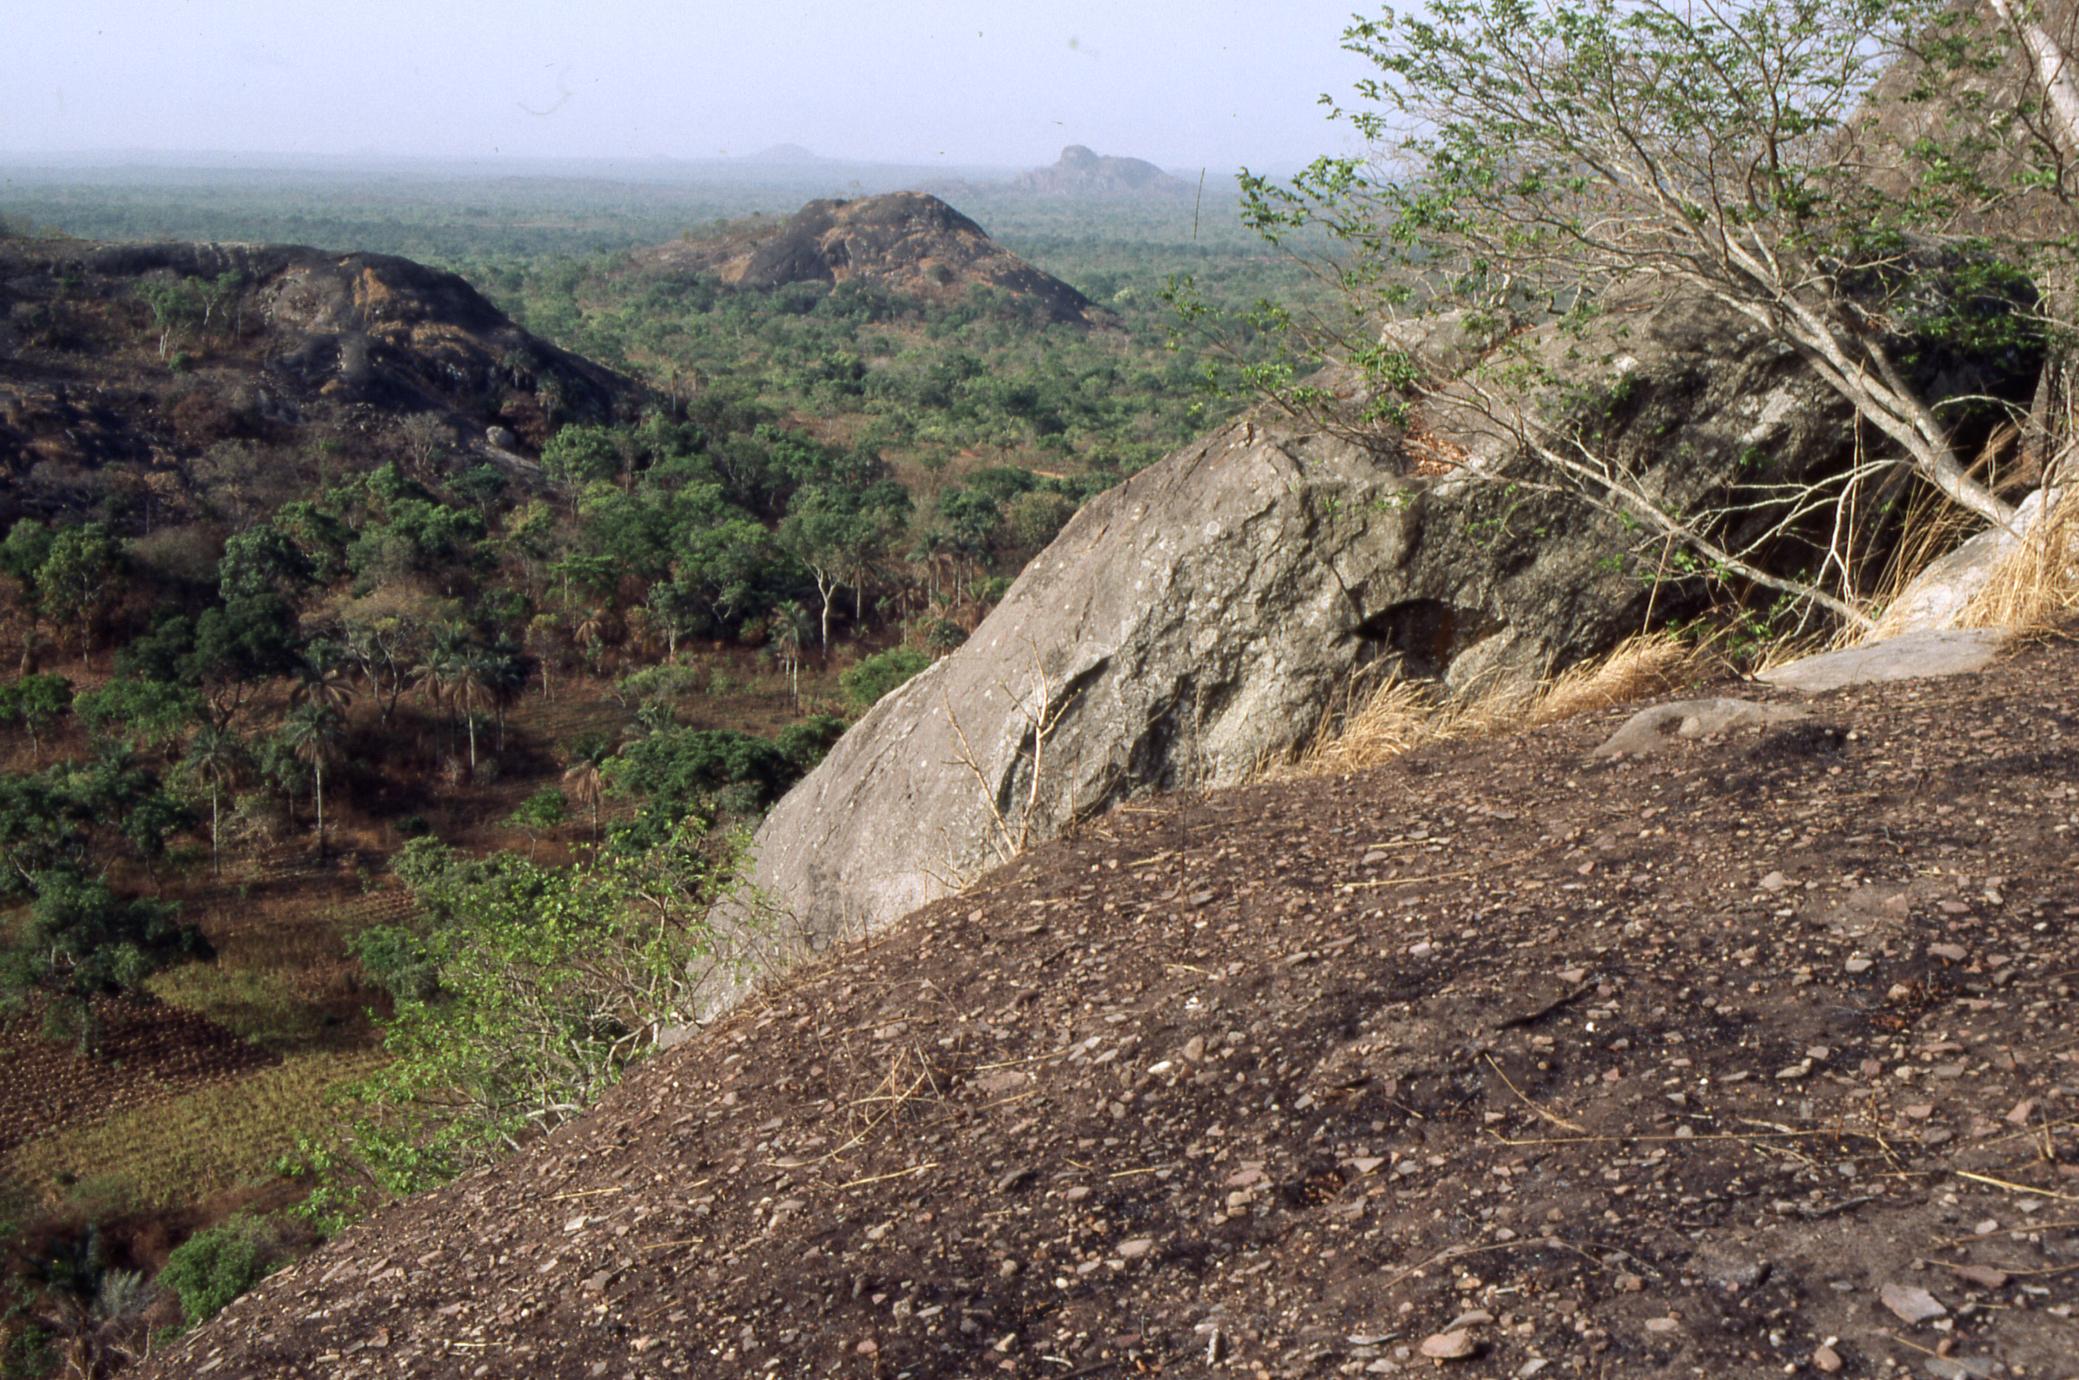 Rocks and vegetation